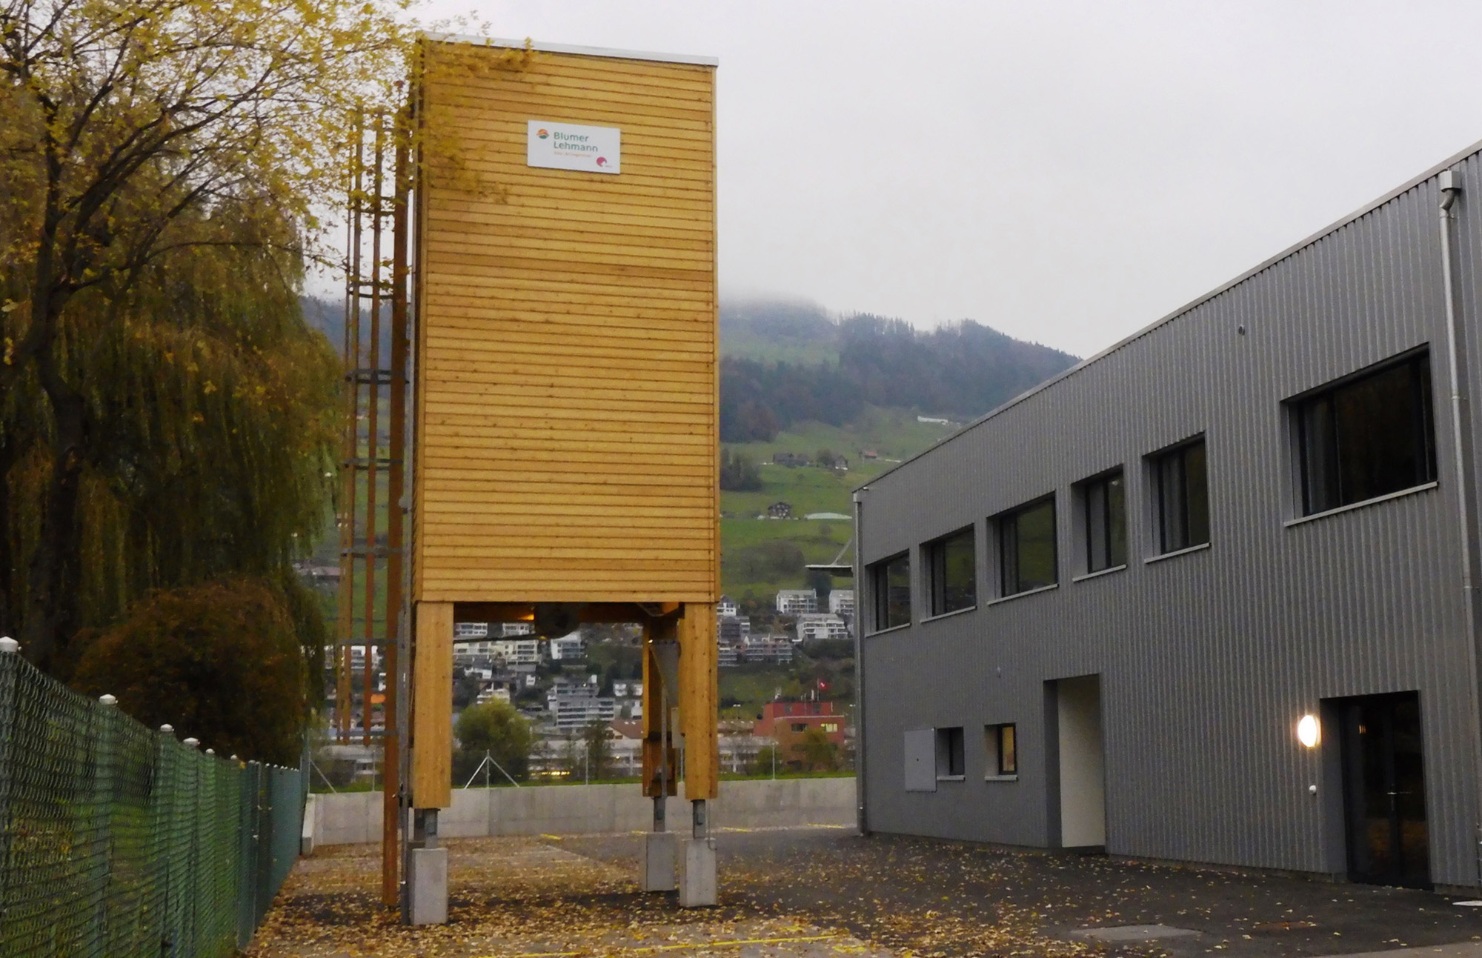 Viereckiger Salzsilo aus Holz mit einem Volumen von 60m3 für Streugut in der Gemeinde Buochs